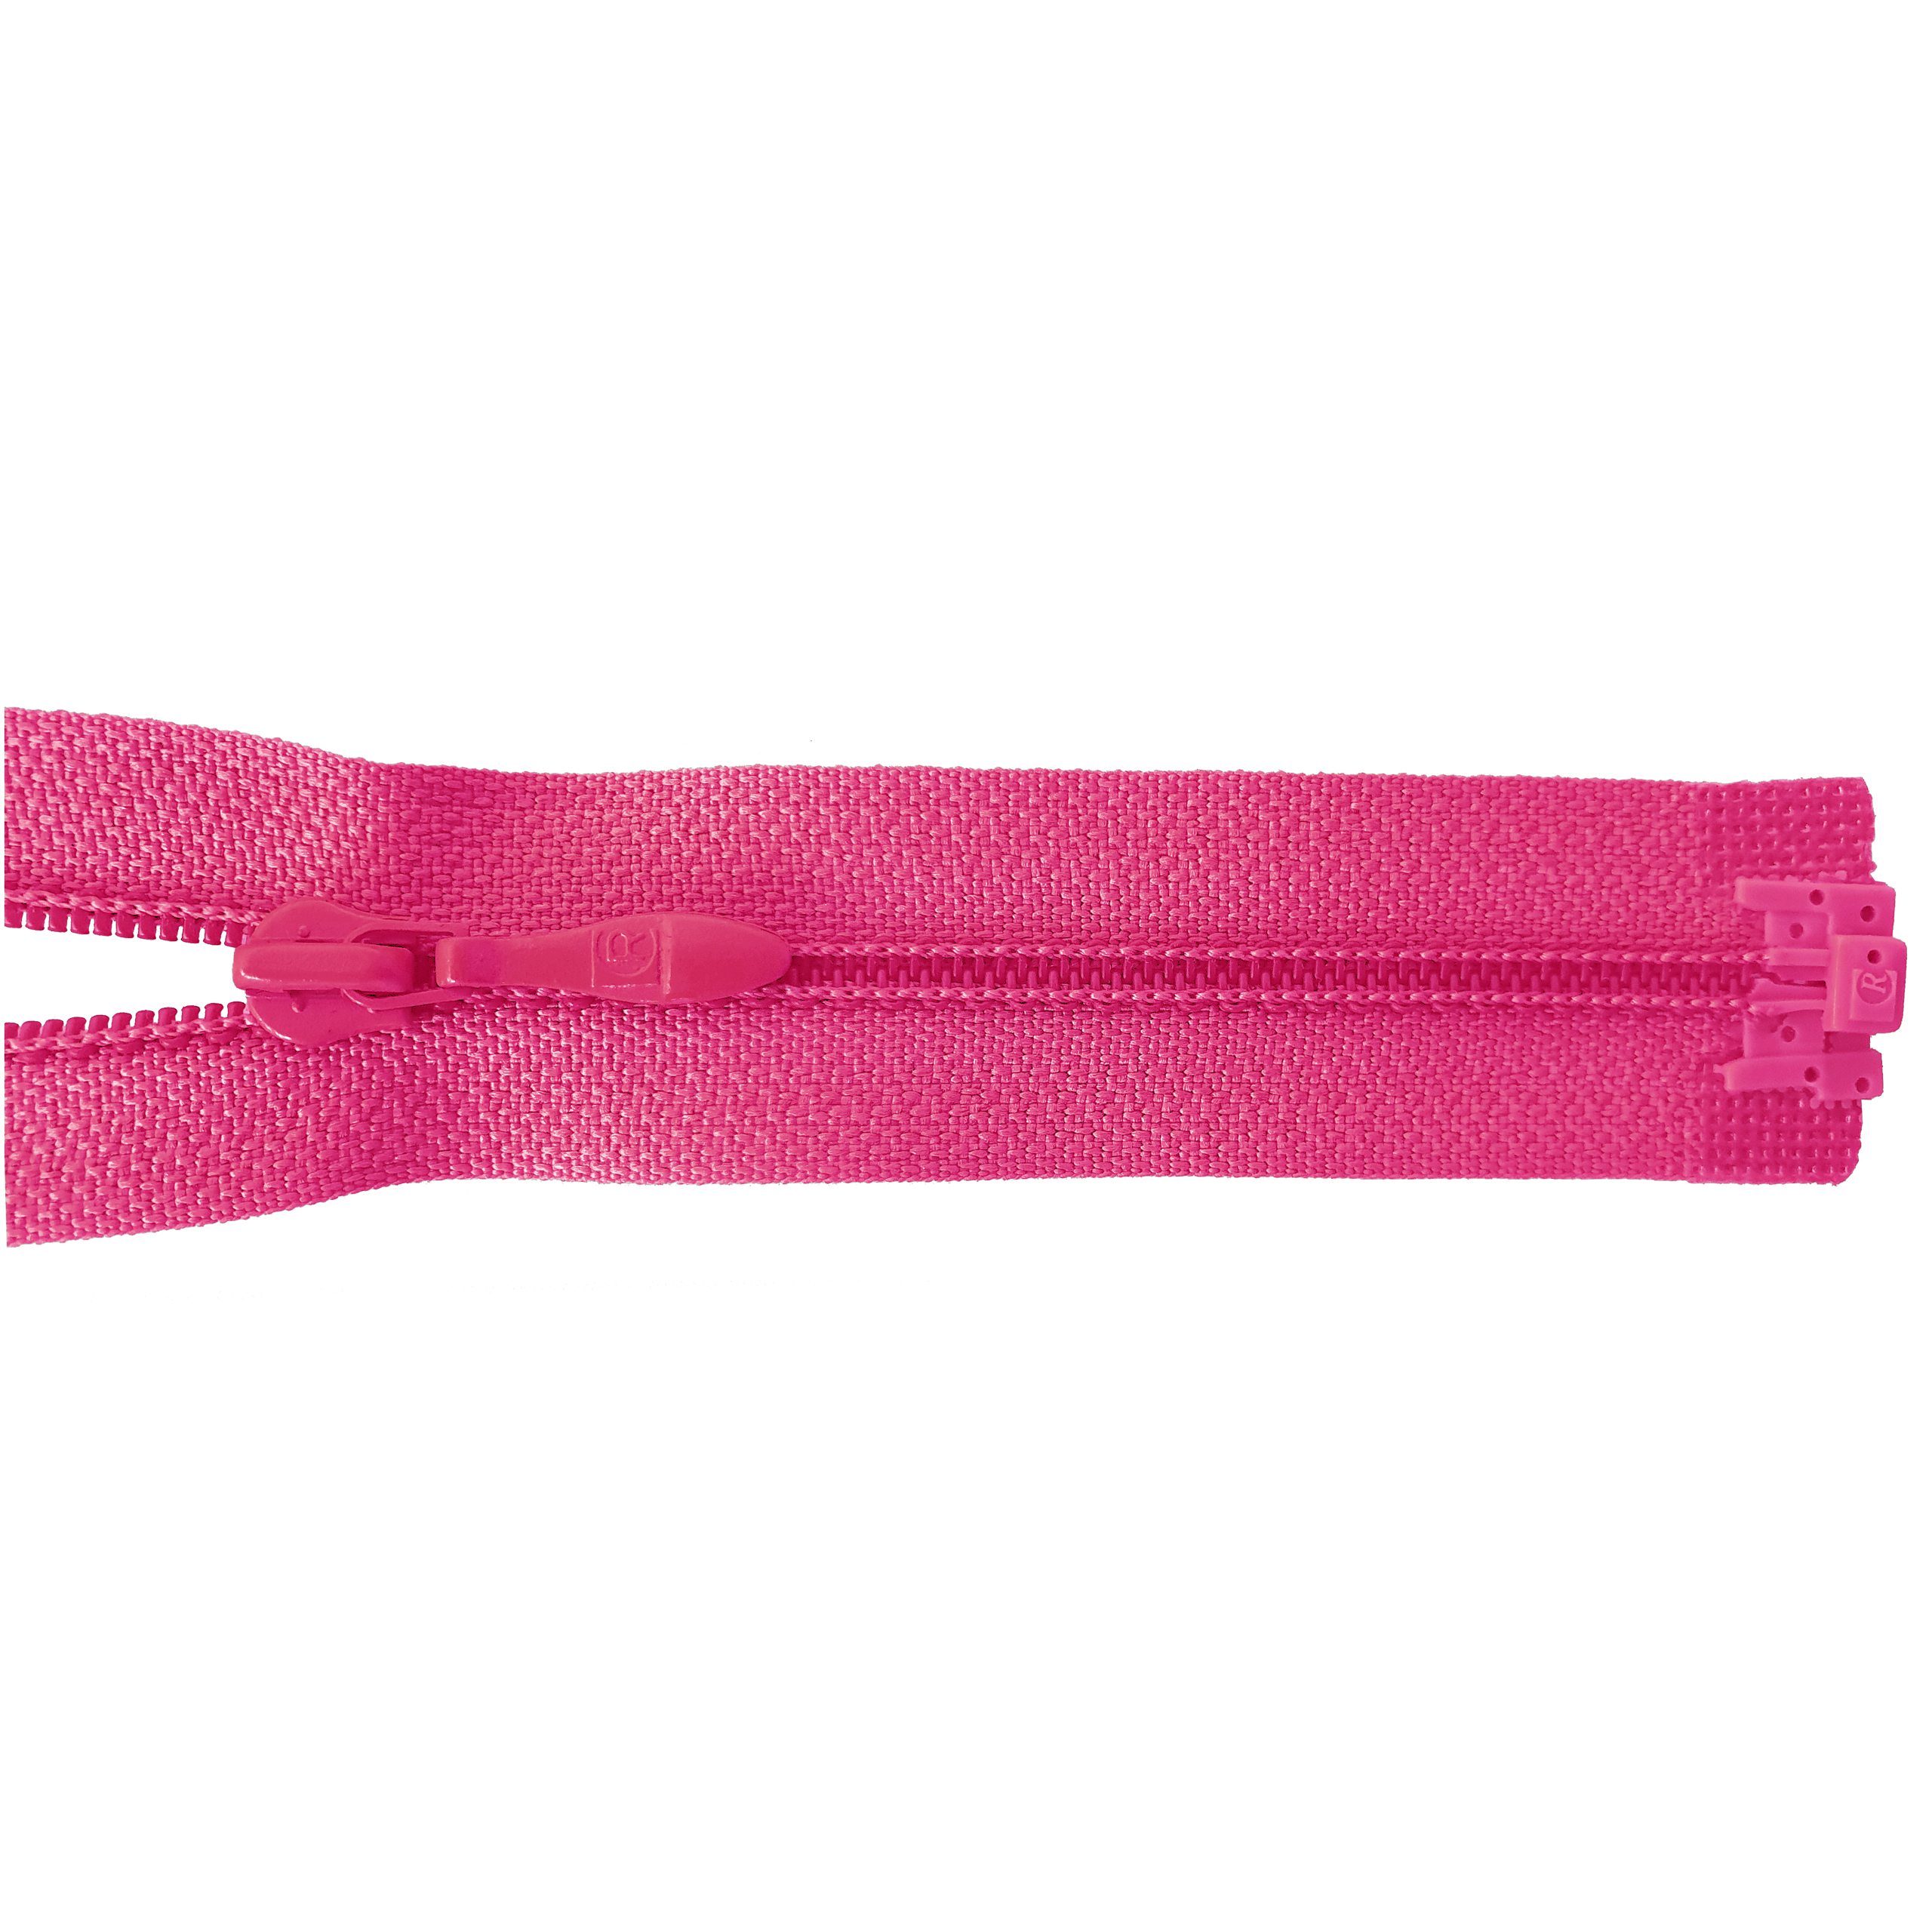 zipper 60cm,divisible, PES spiral, fein, pink